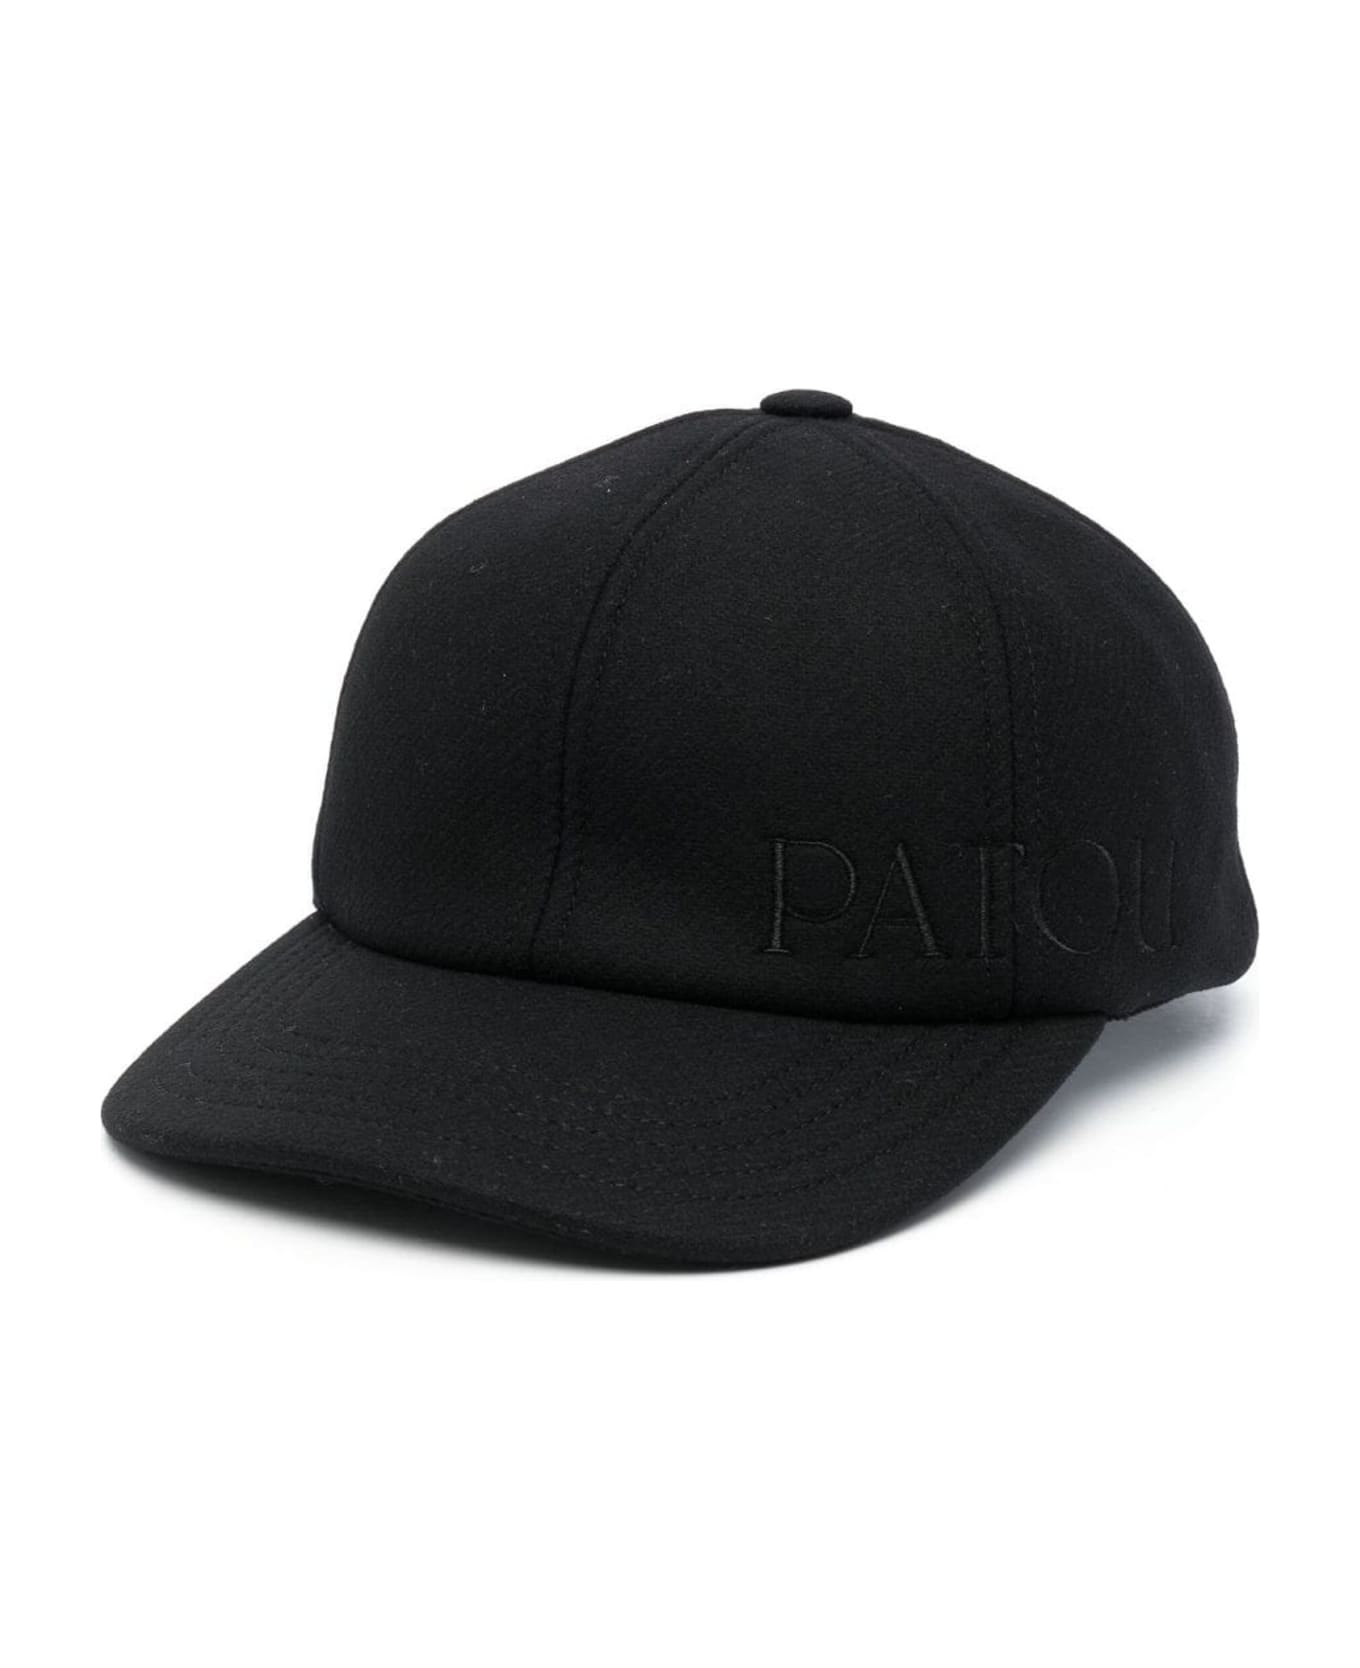 Patou Black Virgin Wool Blend Cap - Black 帽子